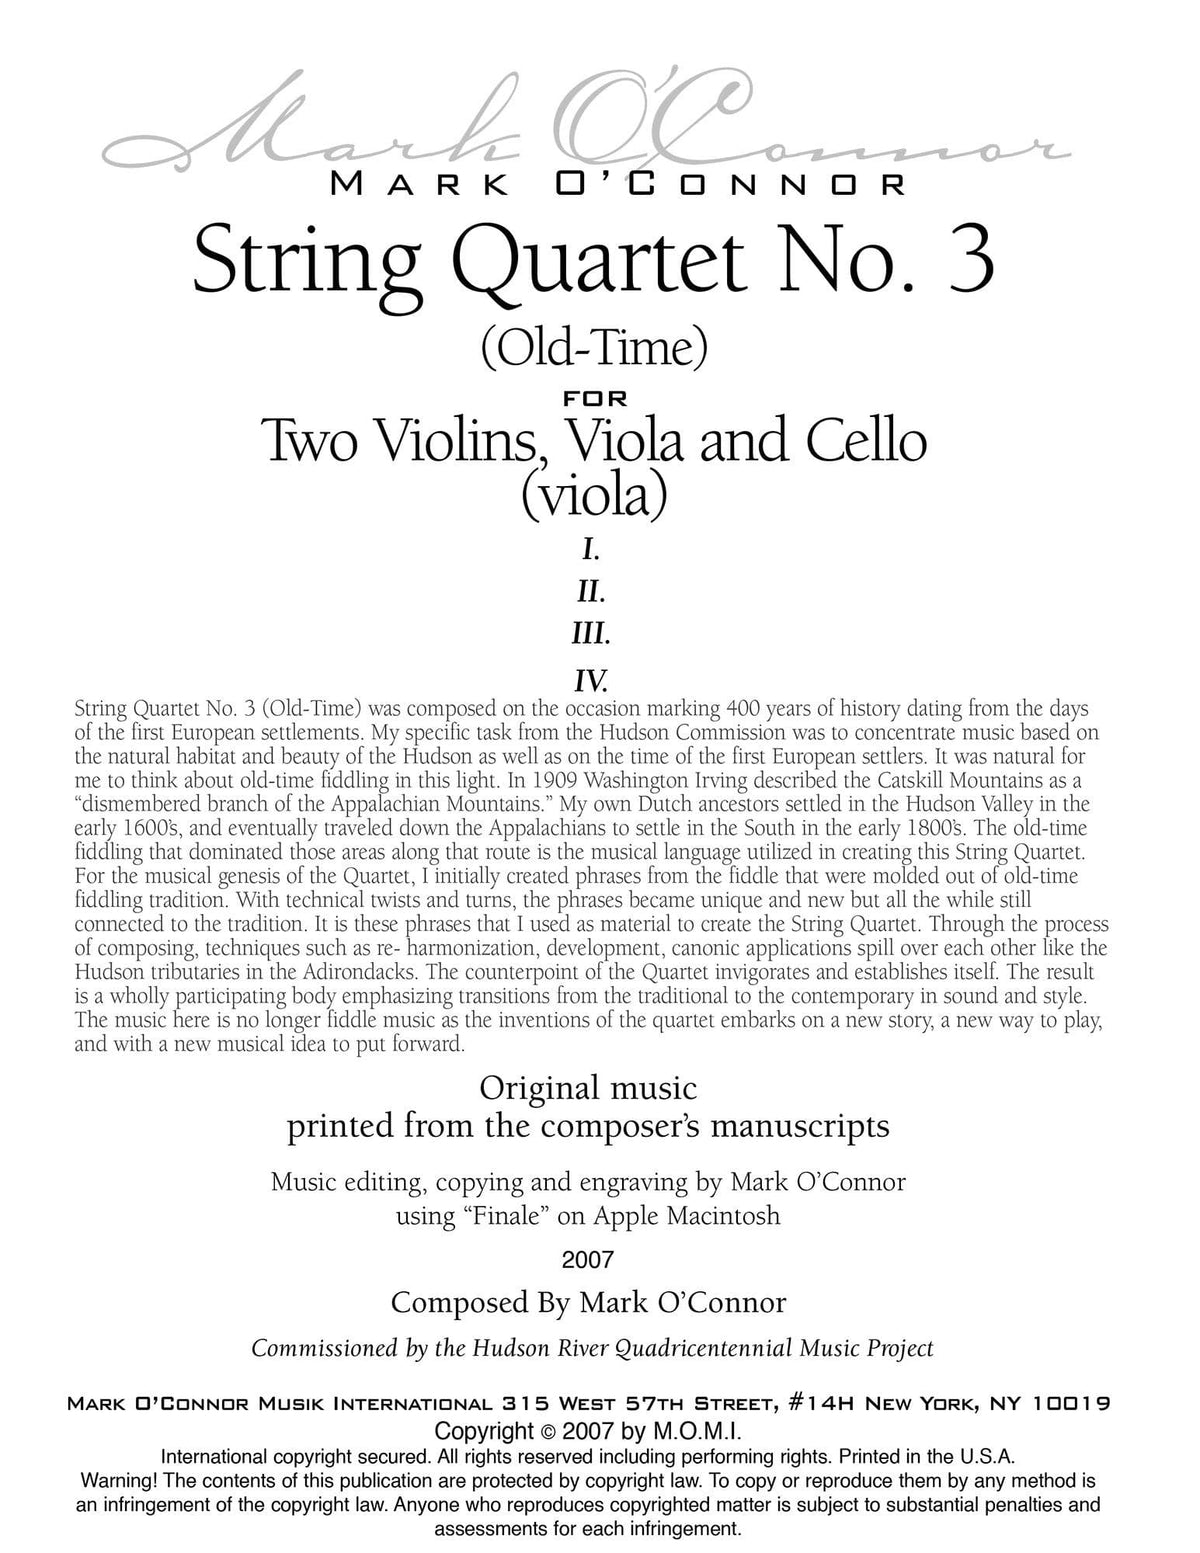 O'Connor, Mark - String Quartet No. 3 (Old-Time) for 2 Violins, Viola, and Cello - Viola - Digital Download